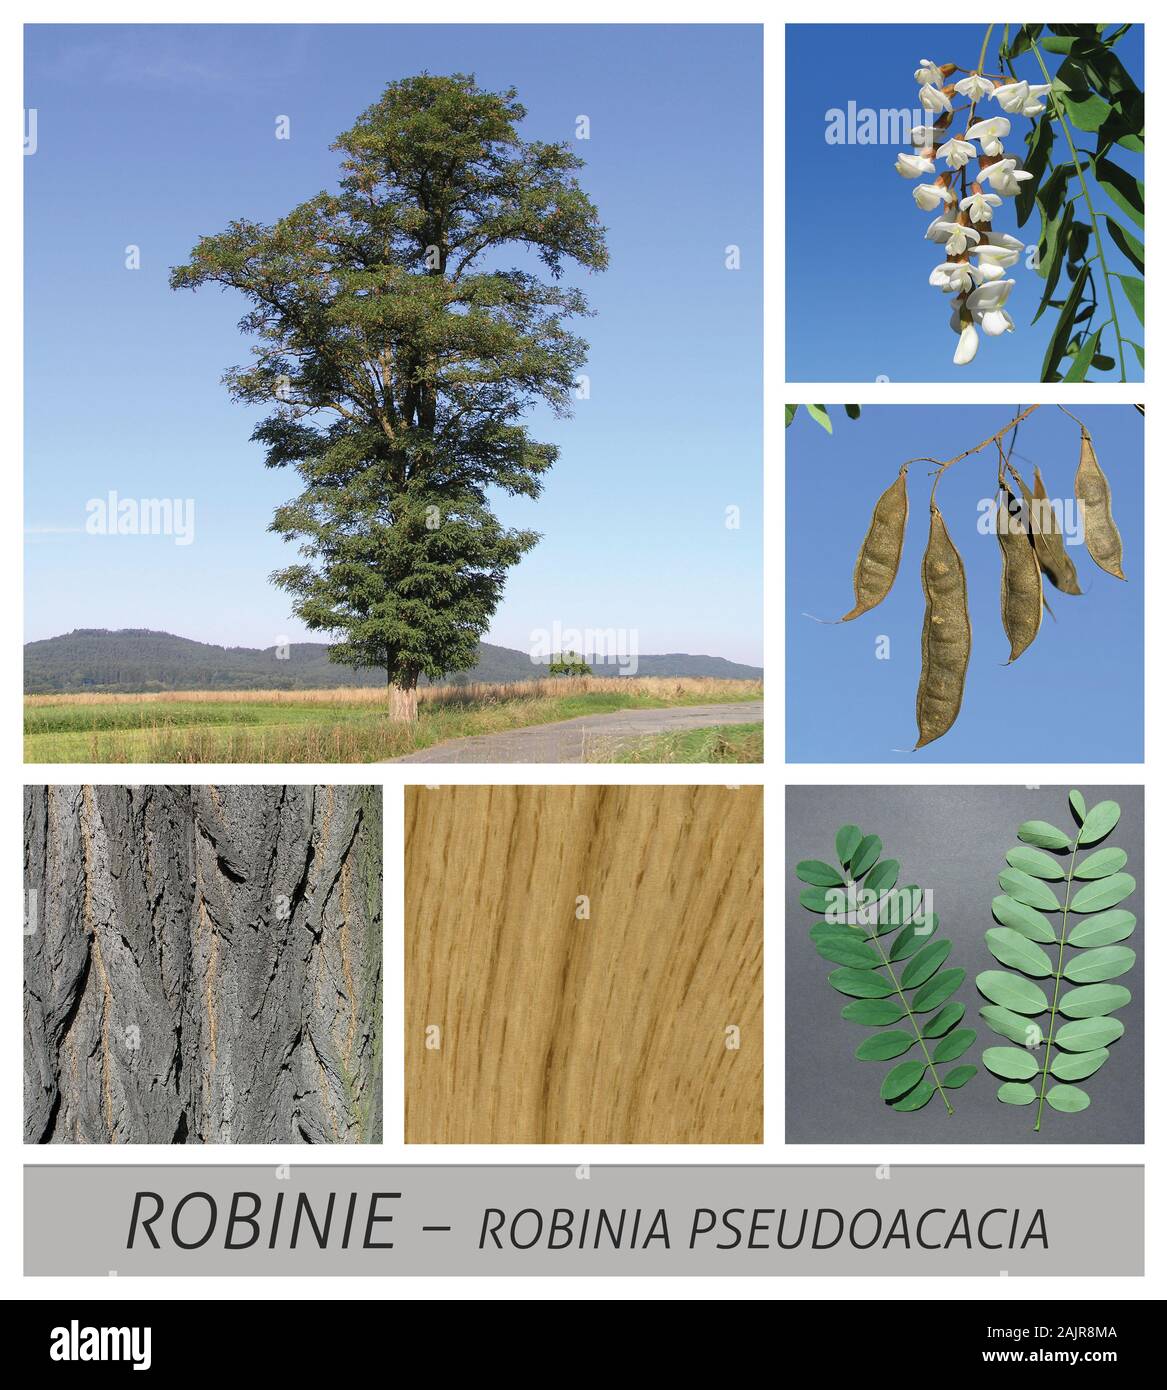 robinia, acacia, shamacacia, robinia pseudoacacia, False Acacia, Locust Tree, Black Locust Stock Photo